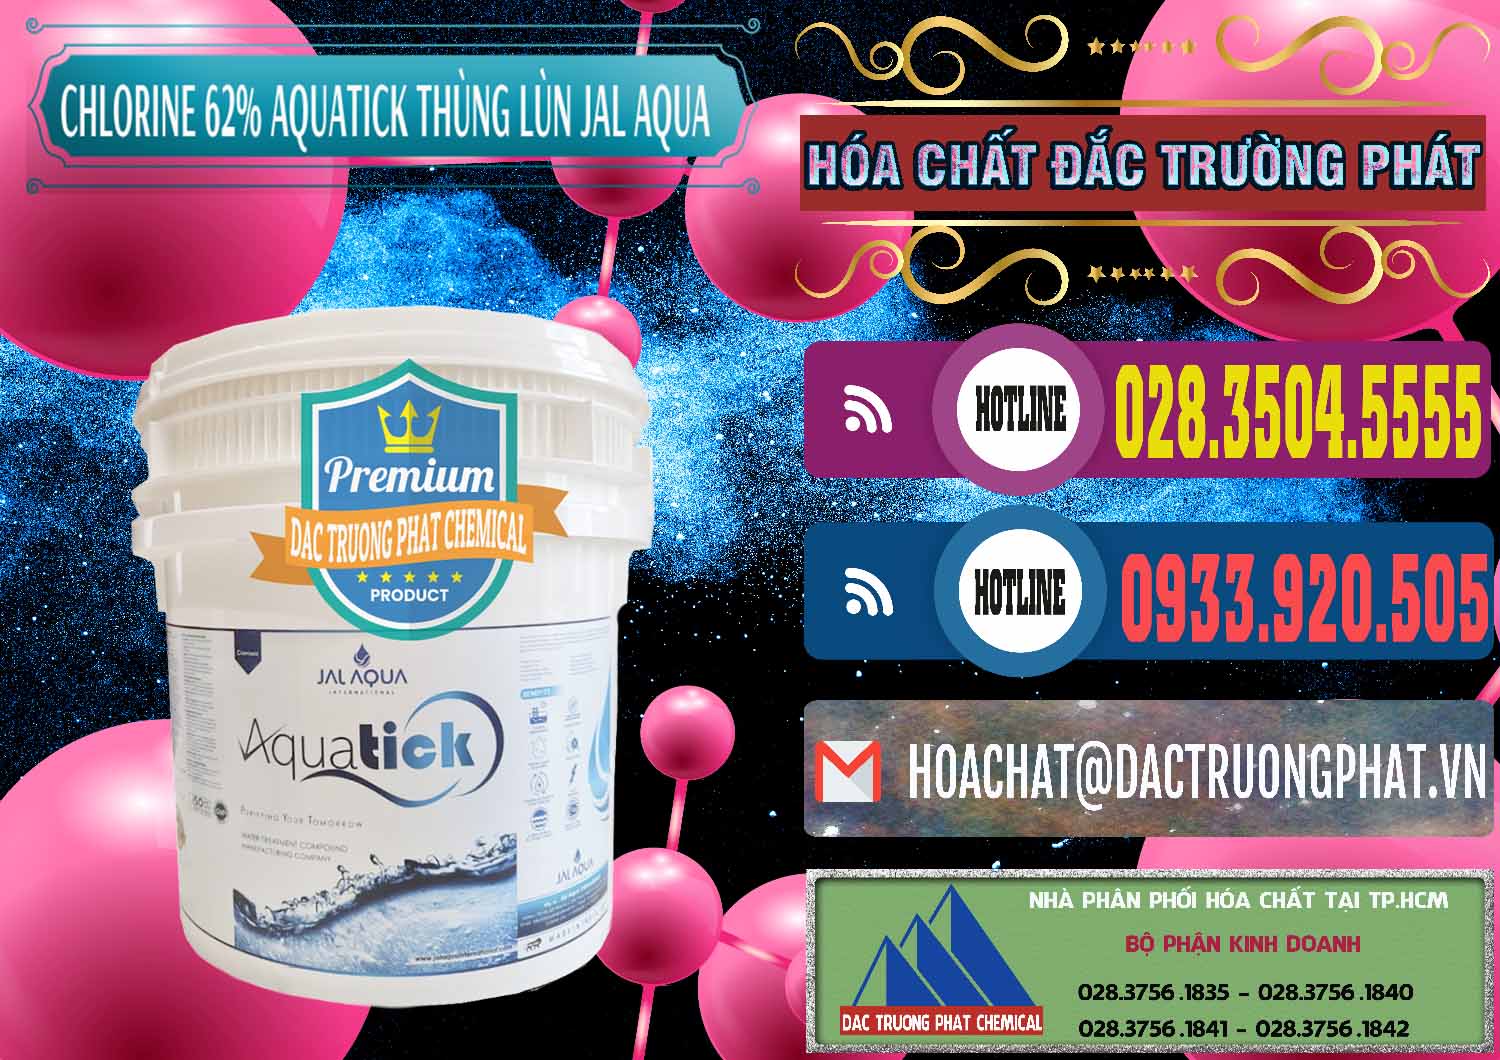 Nhà nhập khẩu & bán Chlorine – Clorin 62% Aquatick Thùng Lùn Jal Aqua Ấn Độ India - 0238 - Cty chuyên nhập khẩu _ cung cấp hóa chất tại TP.HCM - muabanhoachat.com.vn